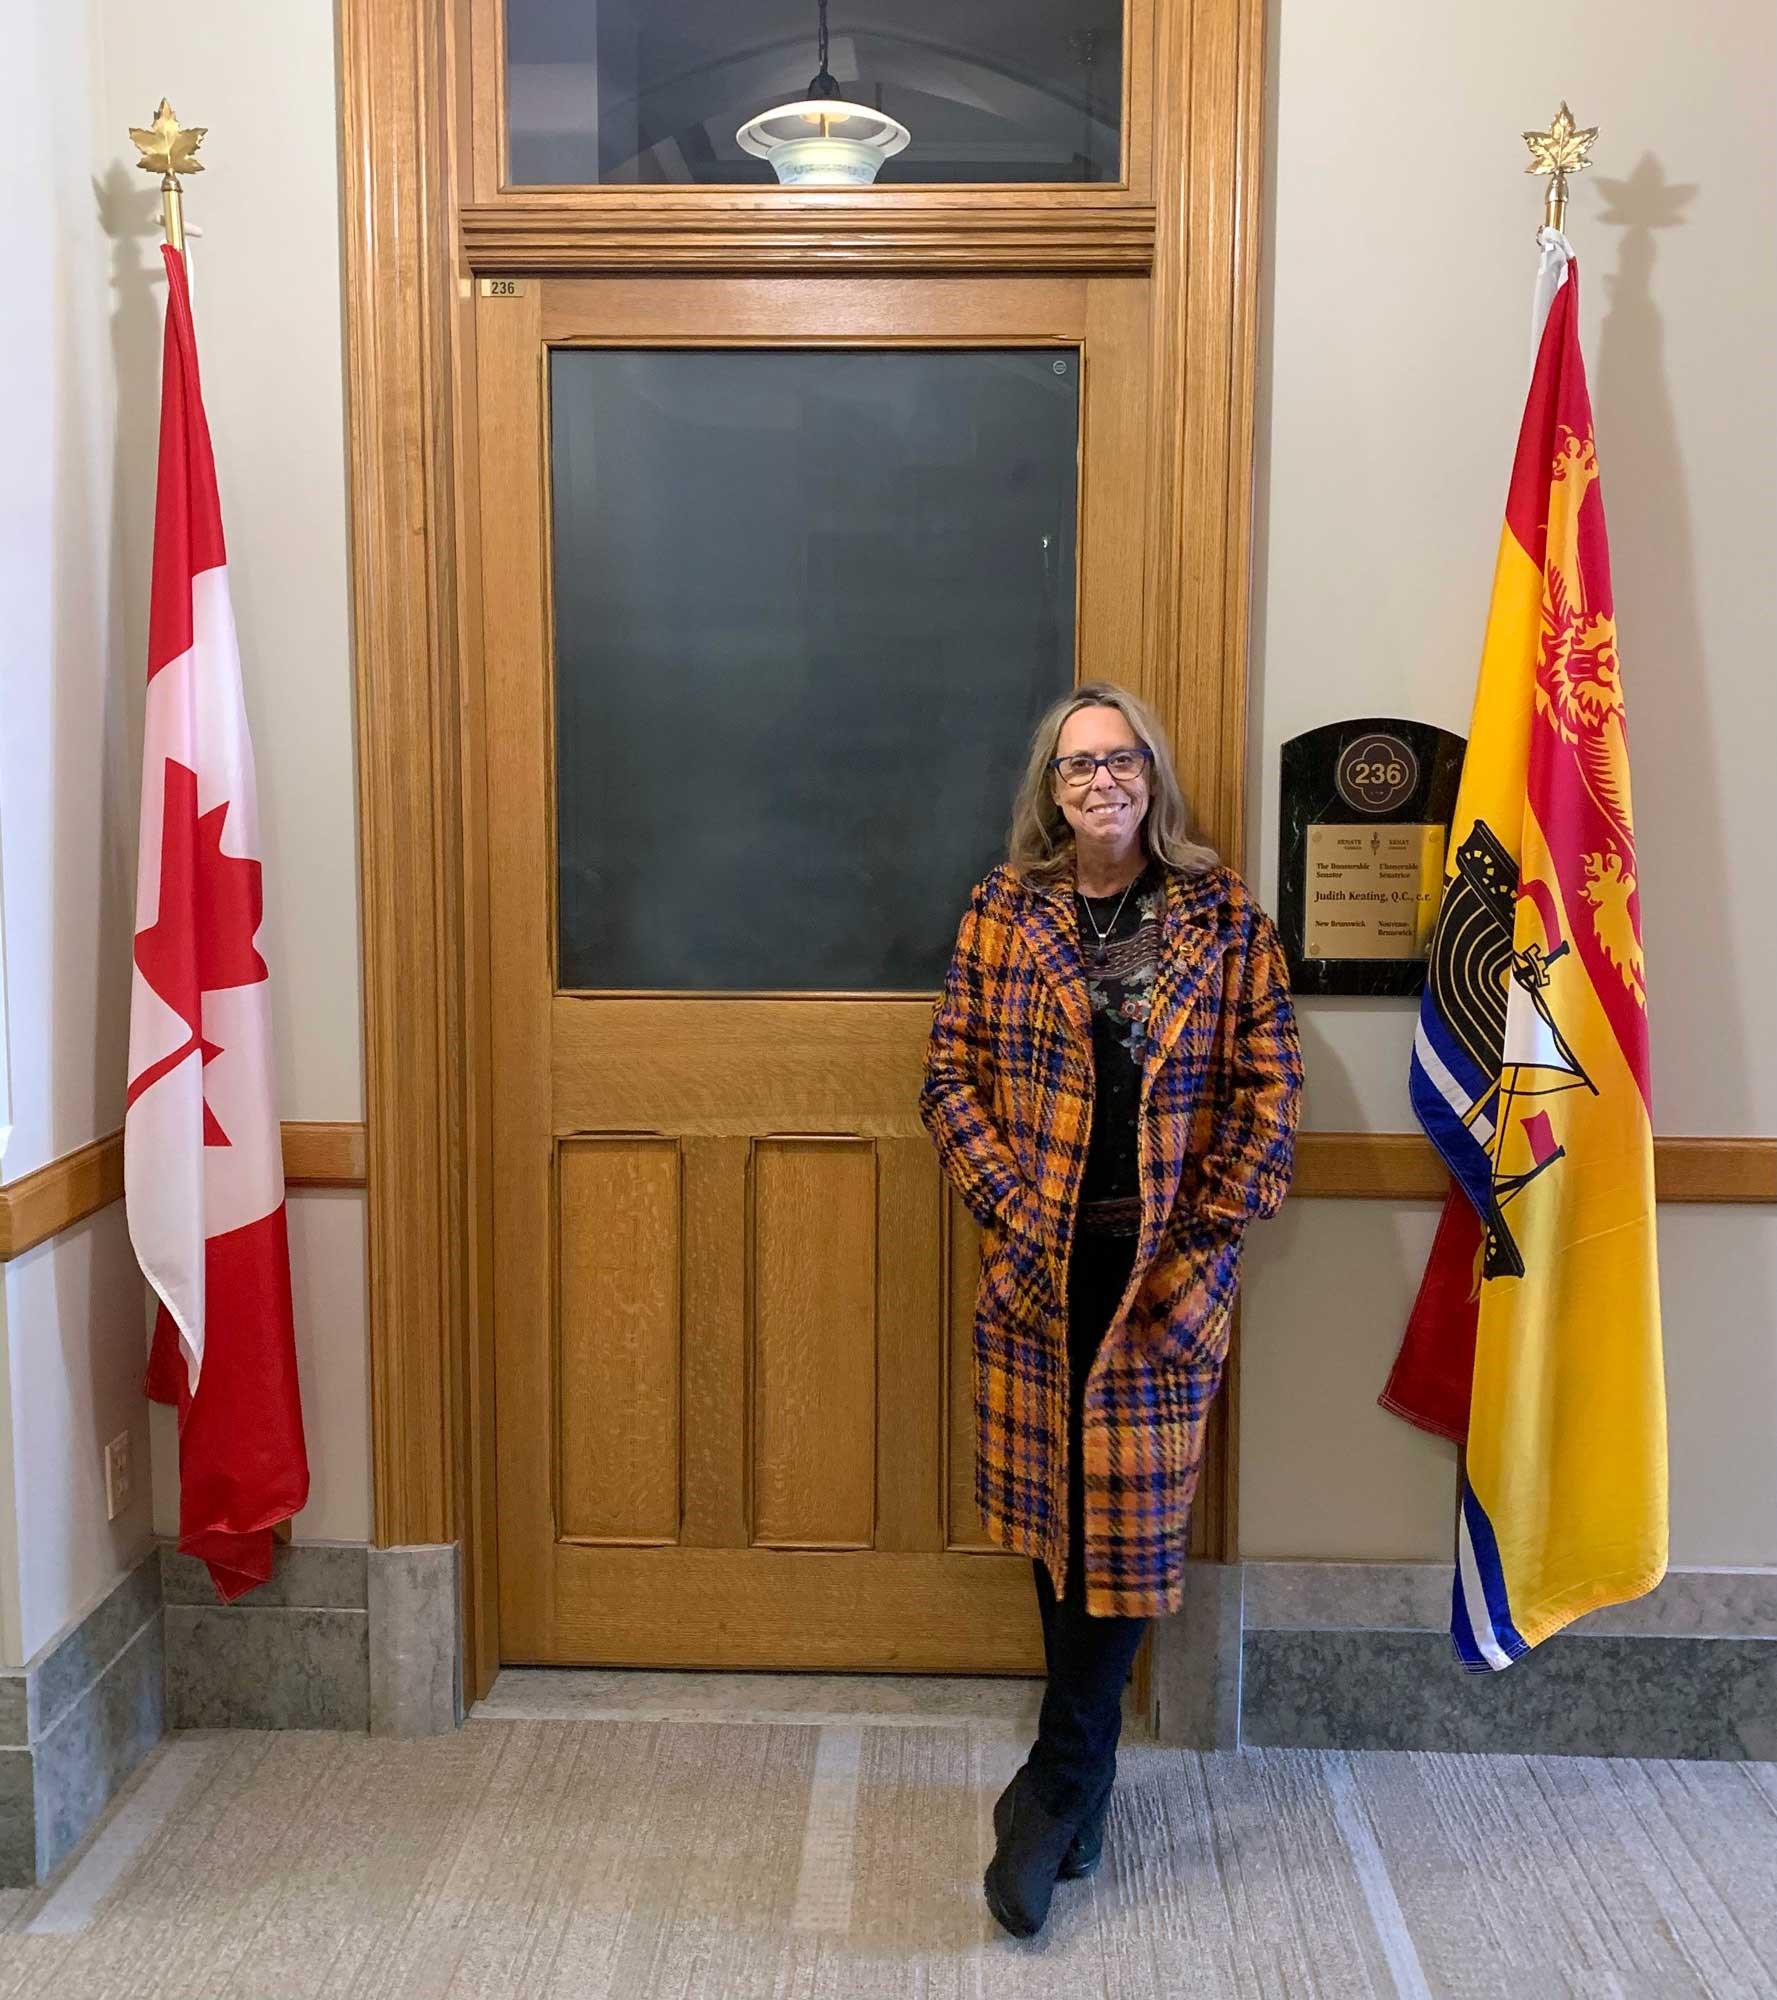 La sénatrice Keating devant la porte de son bureau au Sénat, flanquée du drapeau du Canada et de celui du Nouveau-Brunswick, la province qu’elle représentait à la Chambre haute. (Crédit photo : Bureau de la regrettée sénatrice Keating)